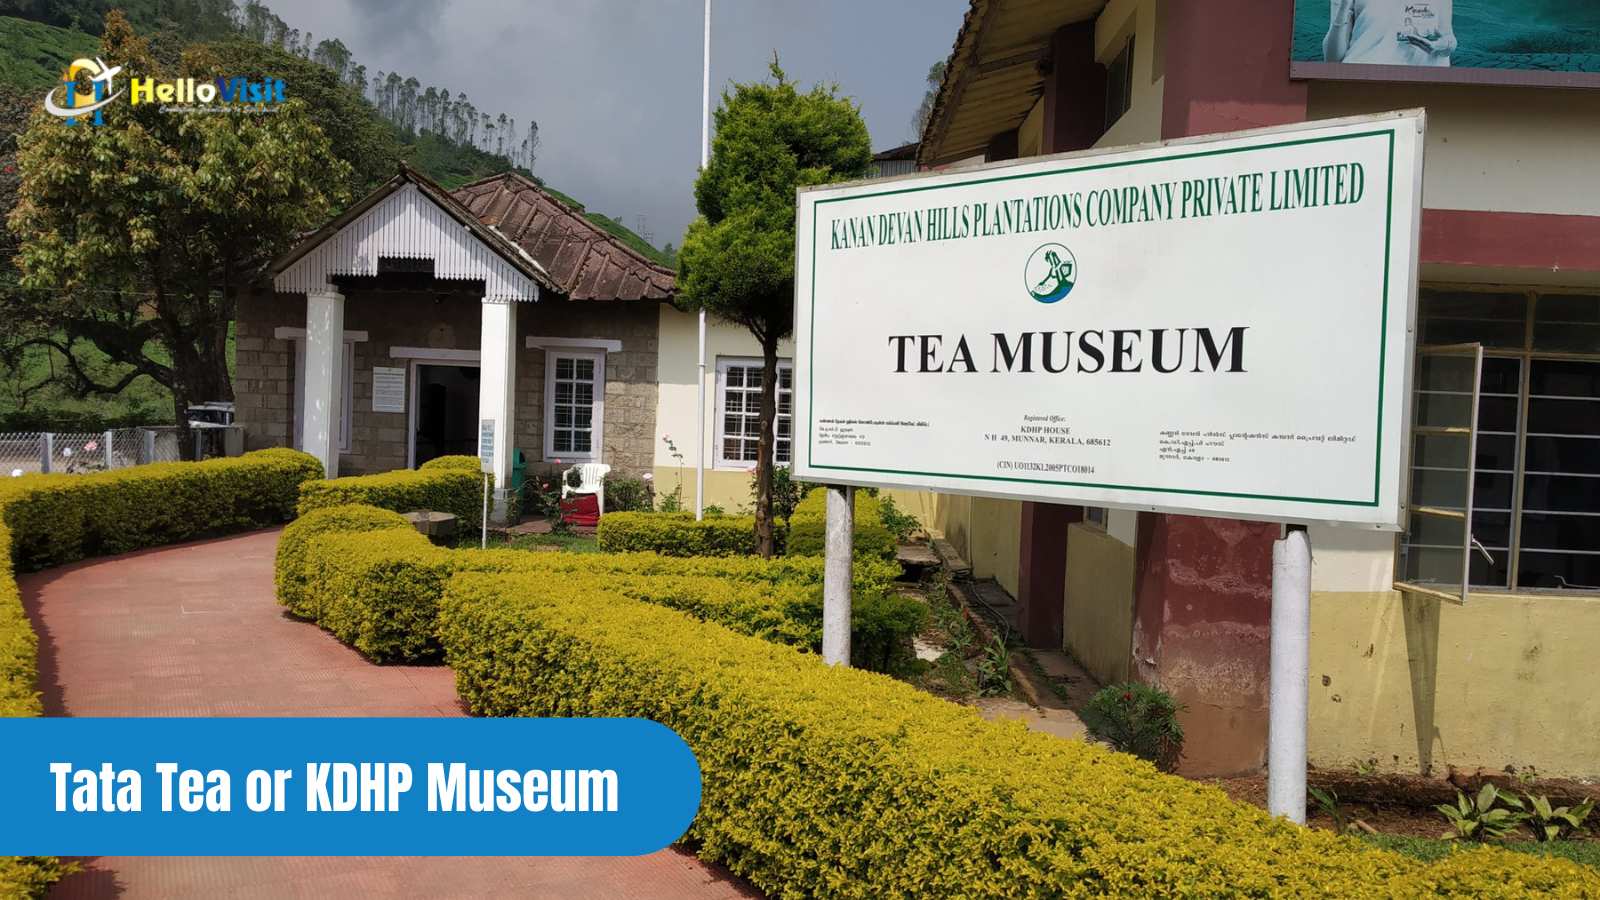 Tata Tea or KDHP Museum, Kerala